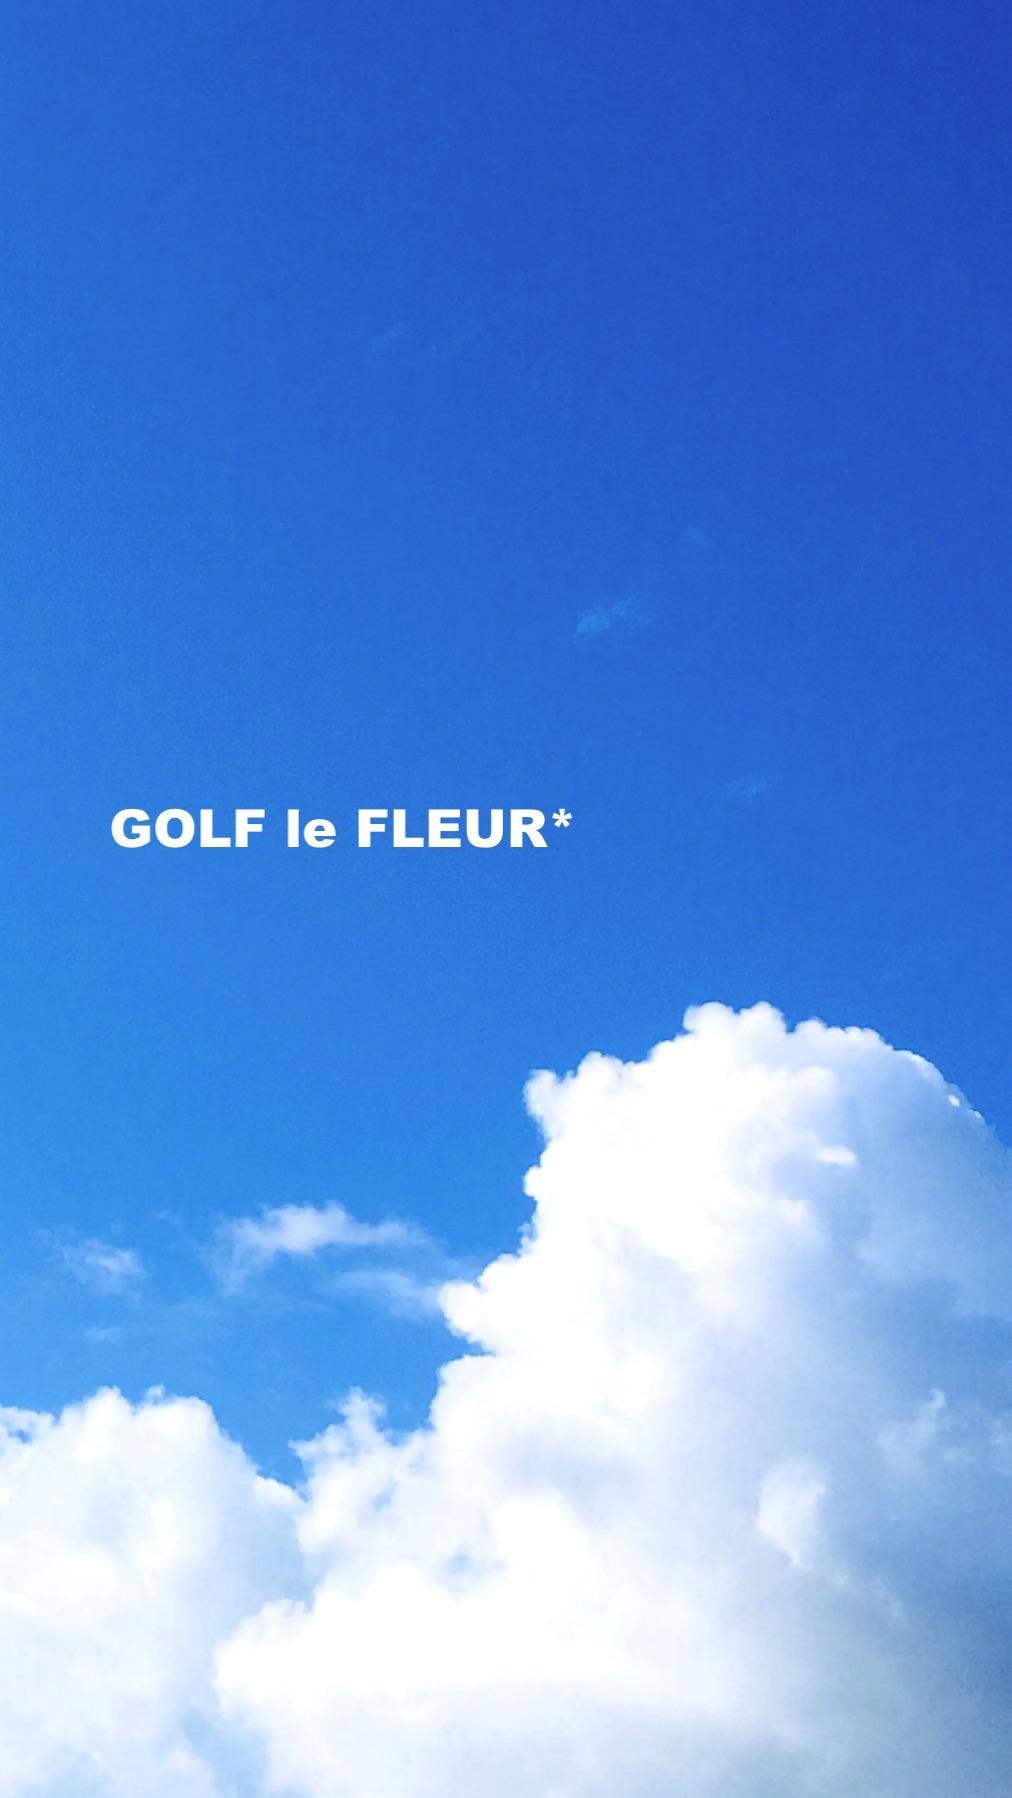 Golf Le Fleur Wallpaper Top Background